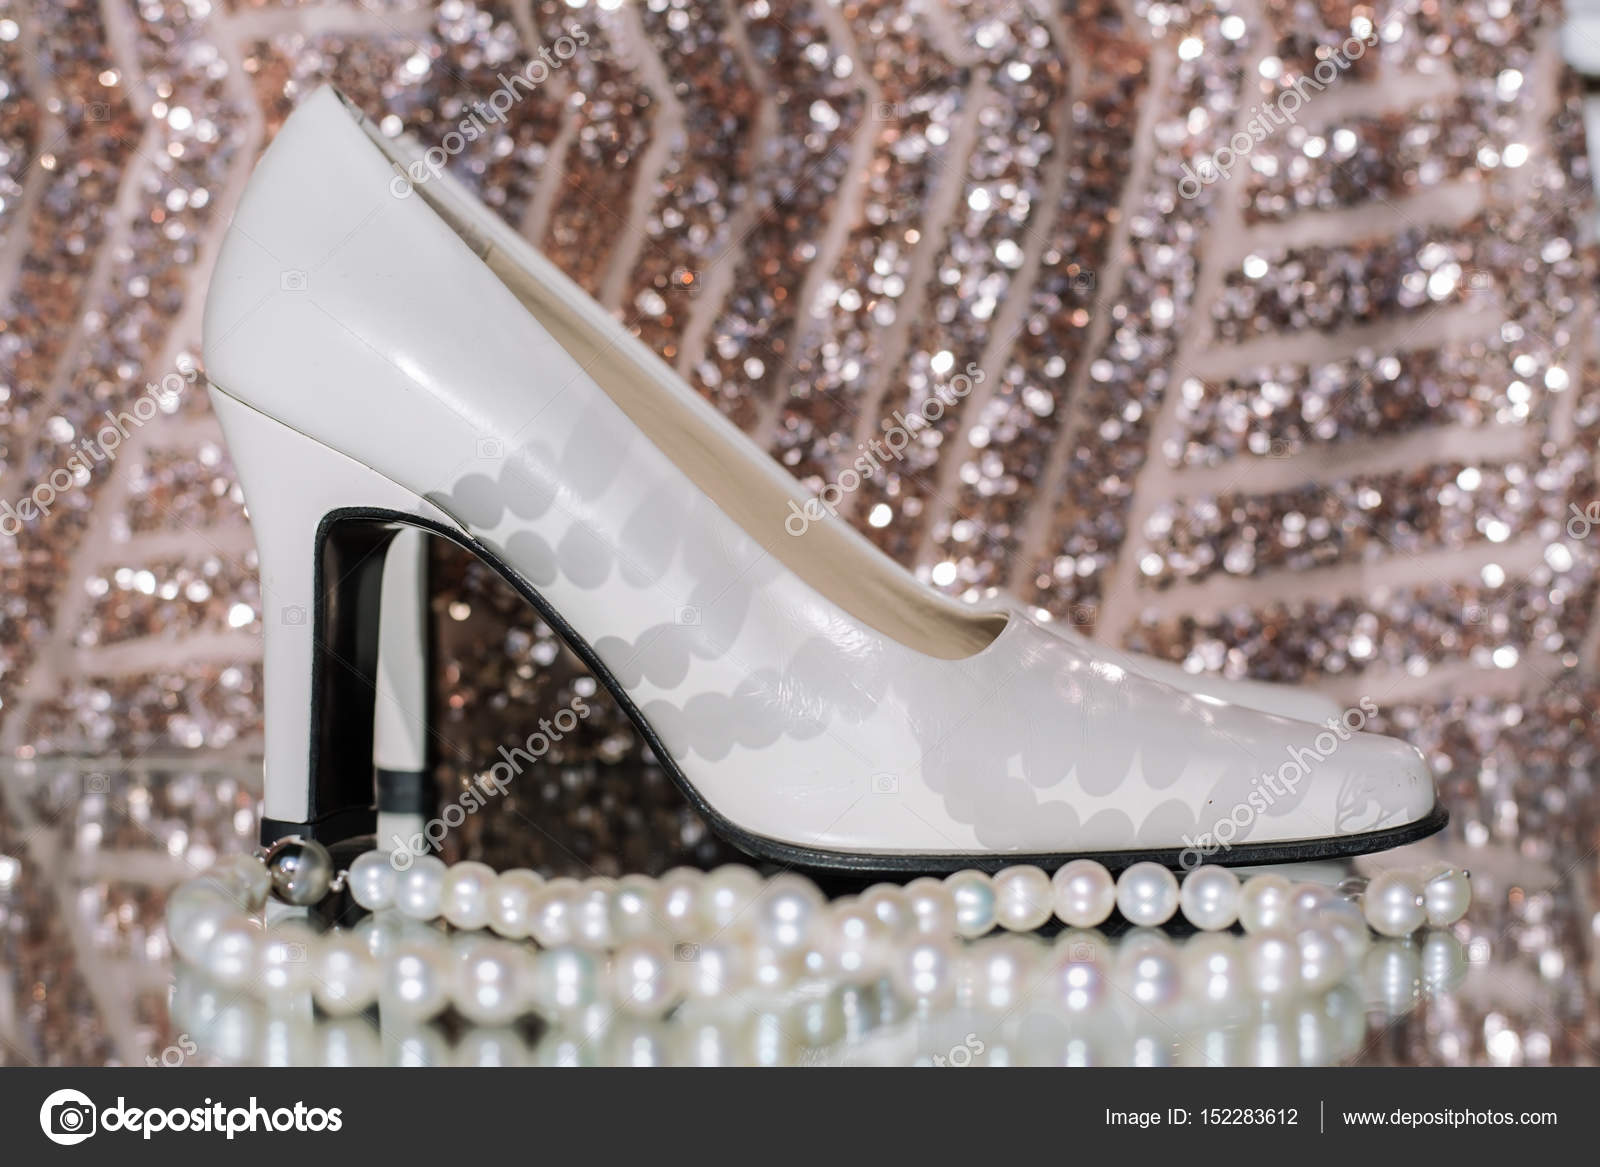 Super Schoonheid van bruiloft accessoires. Witte schoenen met parels ZC-08